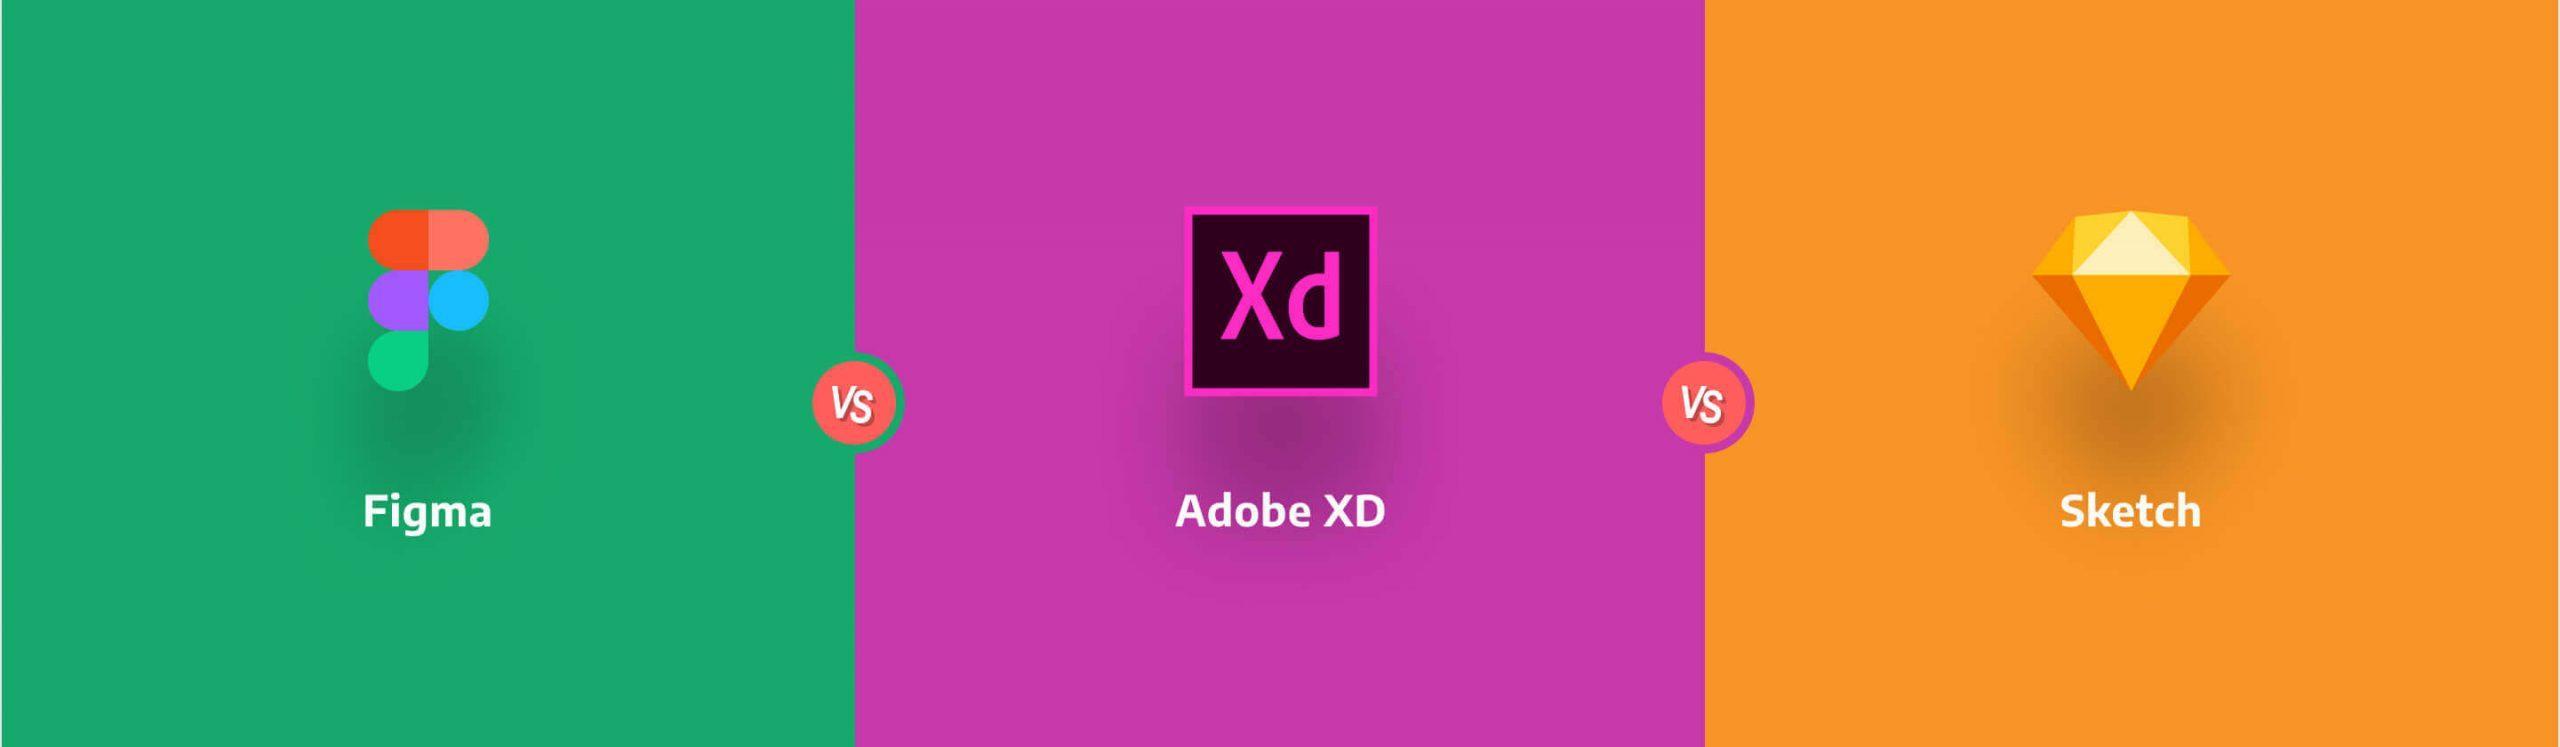 Design Tool Showdown  Adobe XD vs Sketch  Toptal